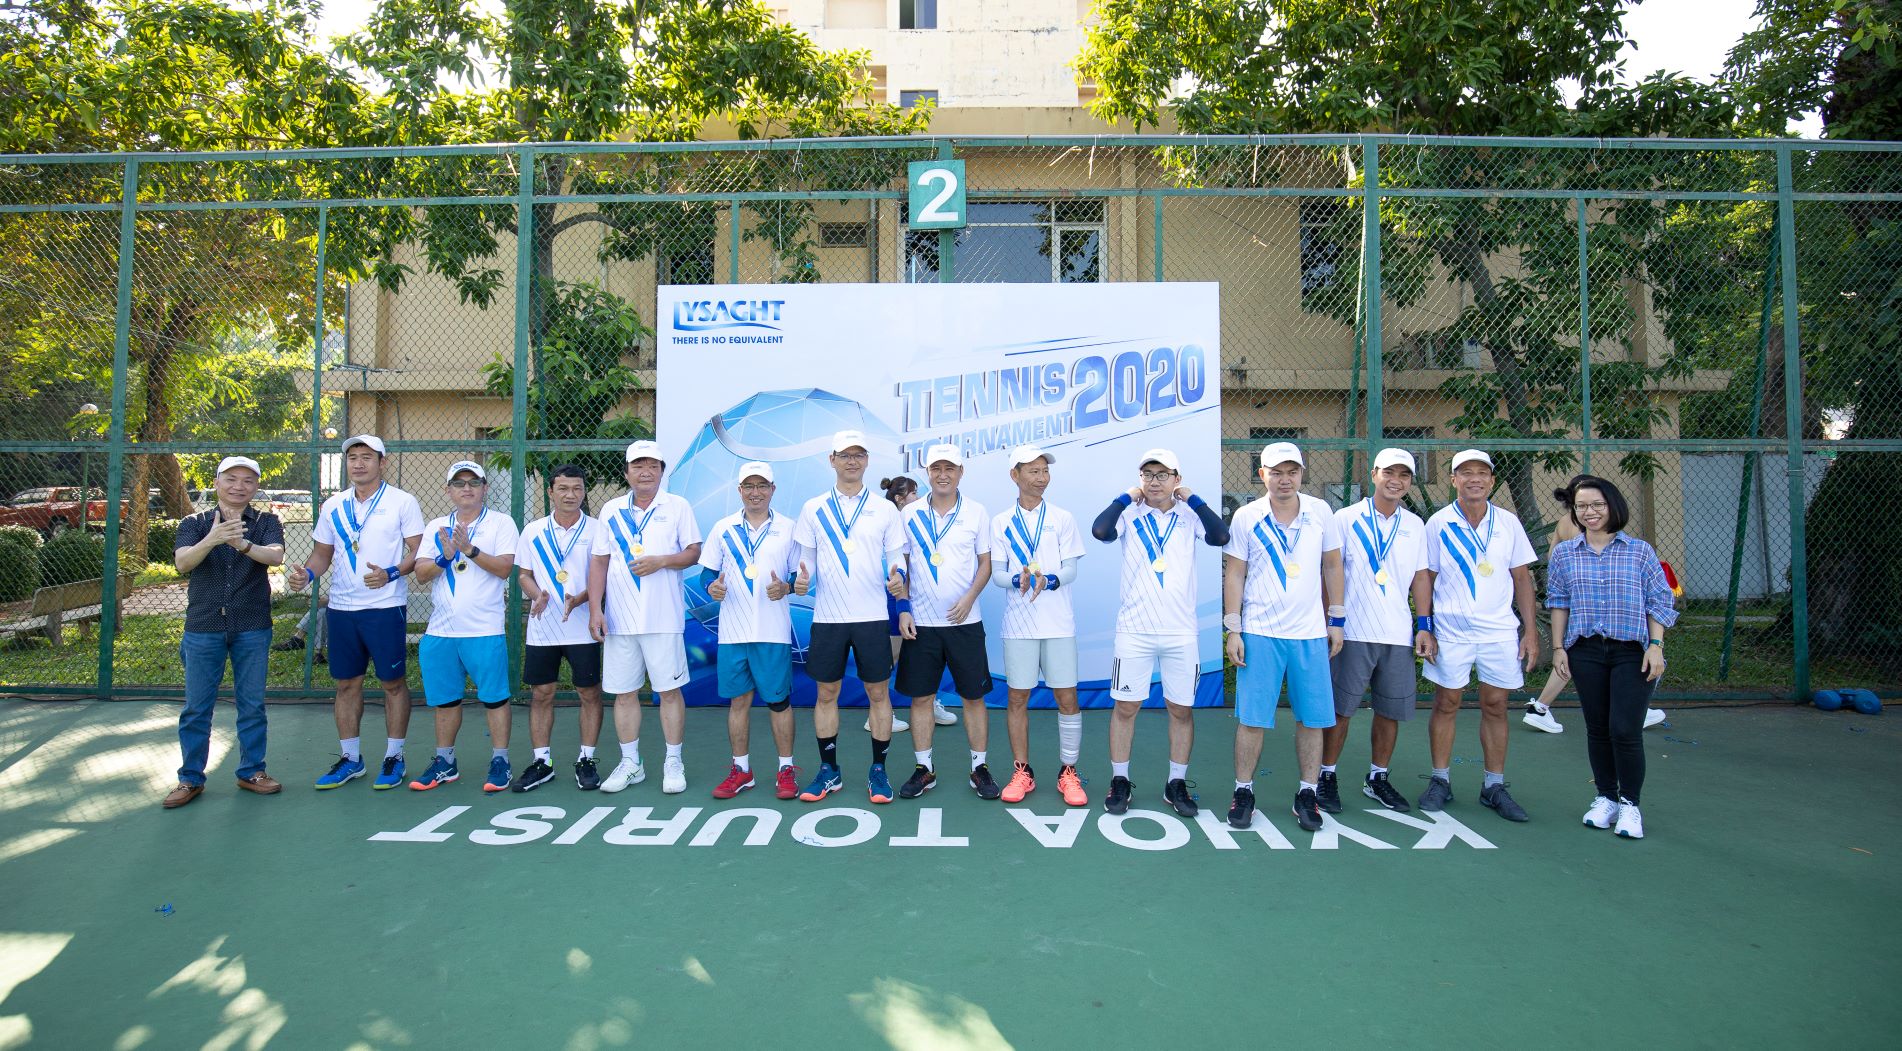 2020_0811_Tennis_Tour-119